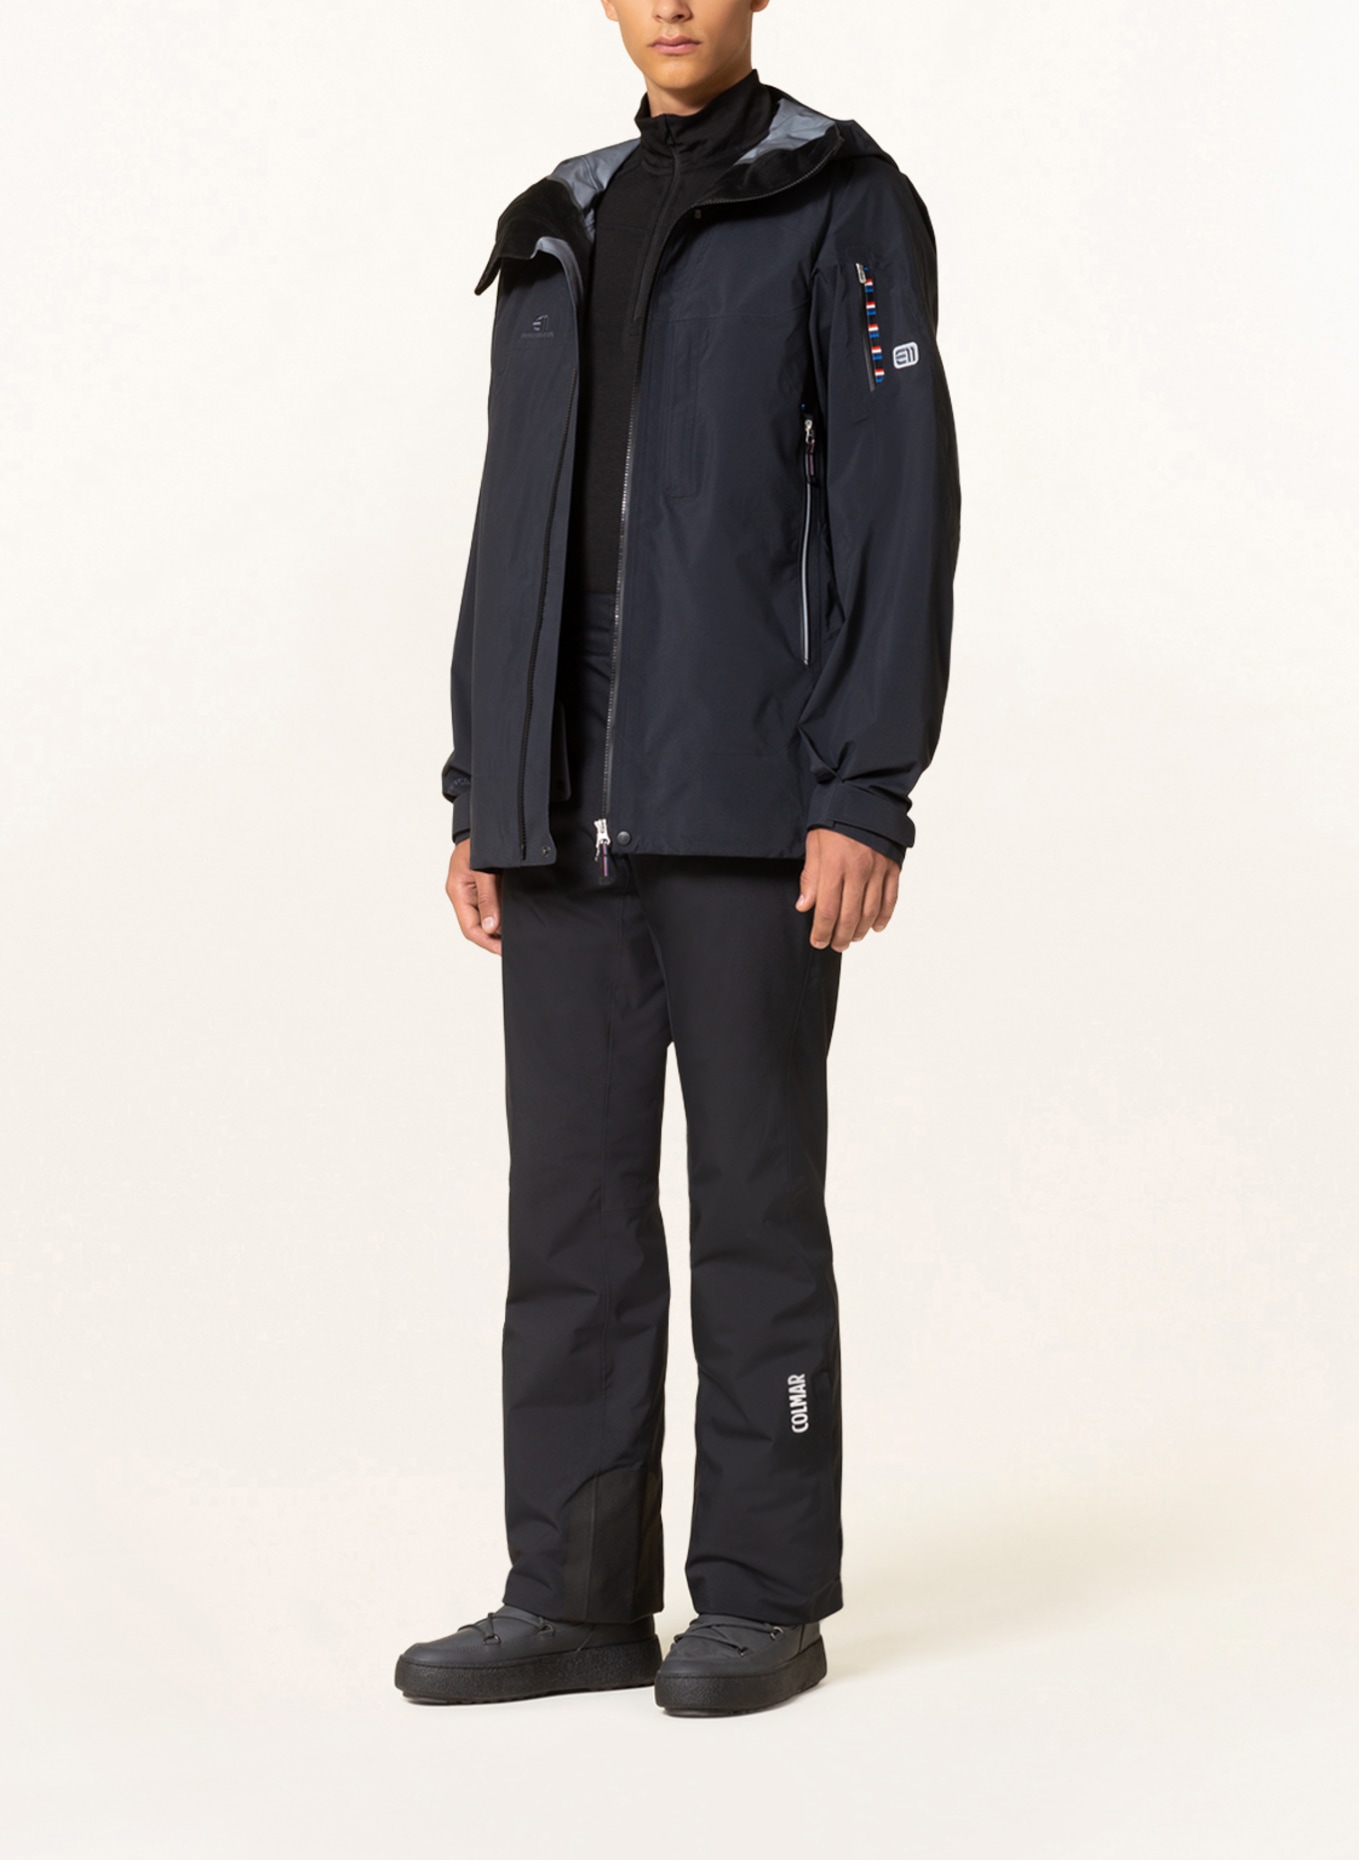 state of elevenate Ski jacket BEC DE ROSSES, Color: BLACK (Image 2)